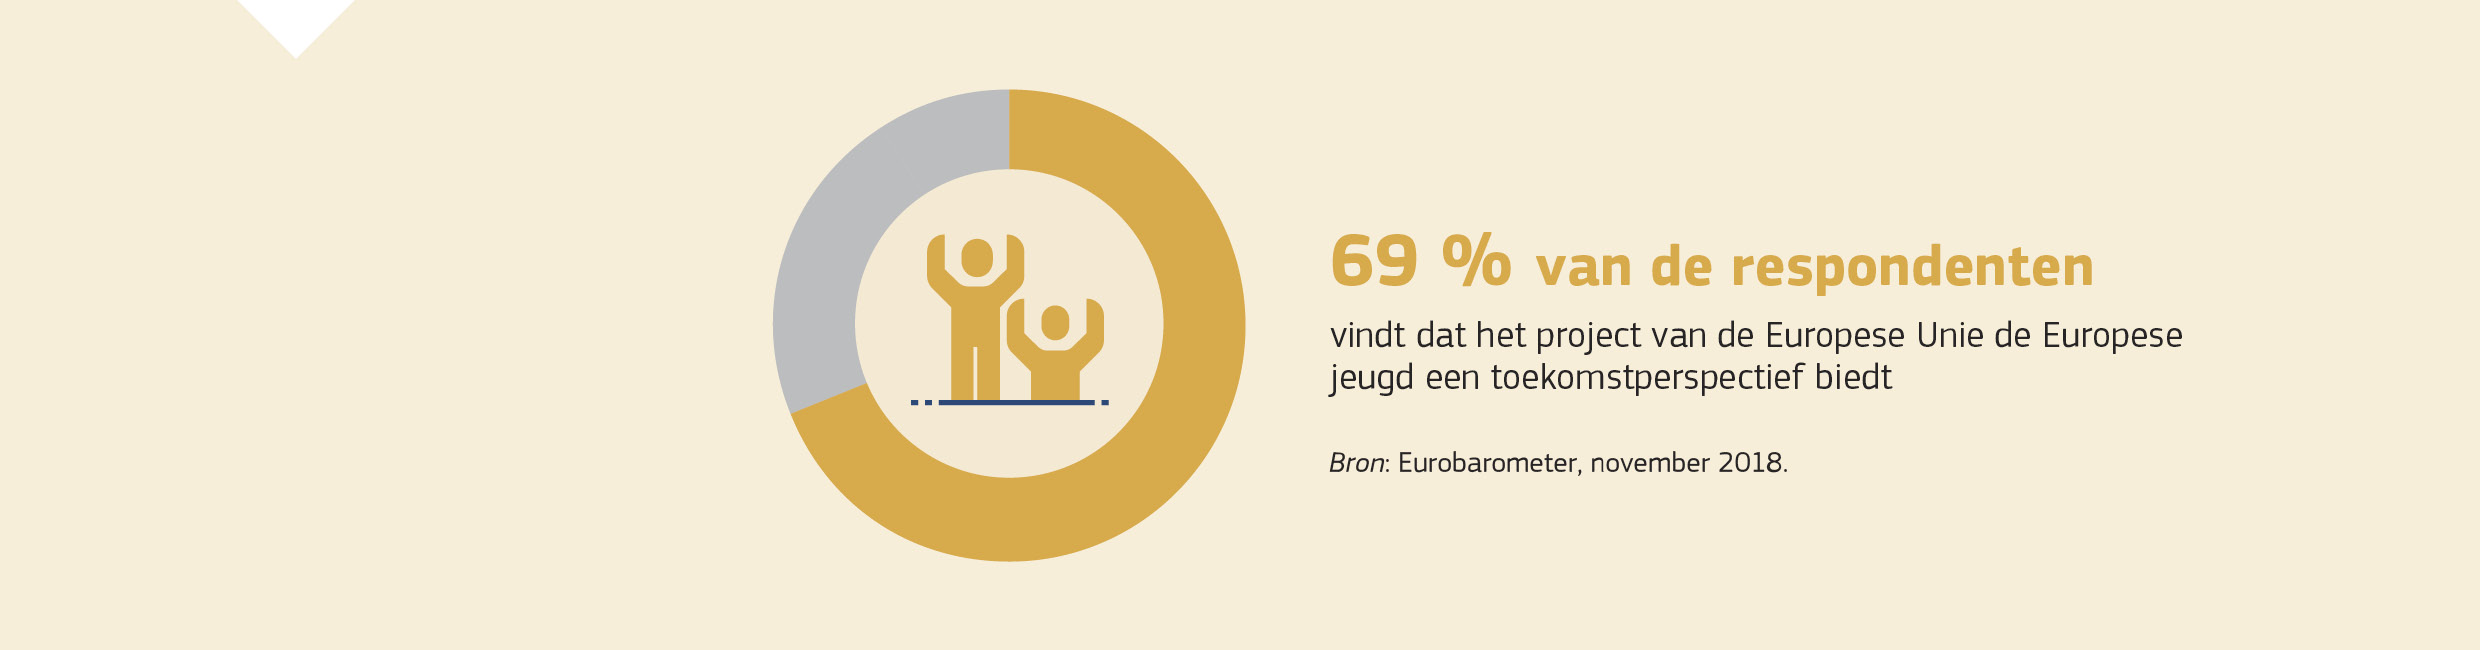 69 % van de respondenten vindt dat het project van de Europese Unie de Europese jeugd een toekomstperspectief biedt. Bron: Eurobarometer, november 2018.